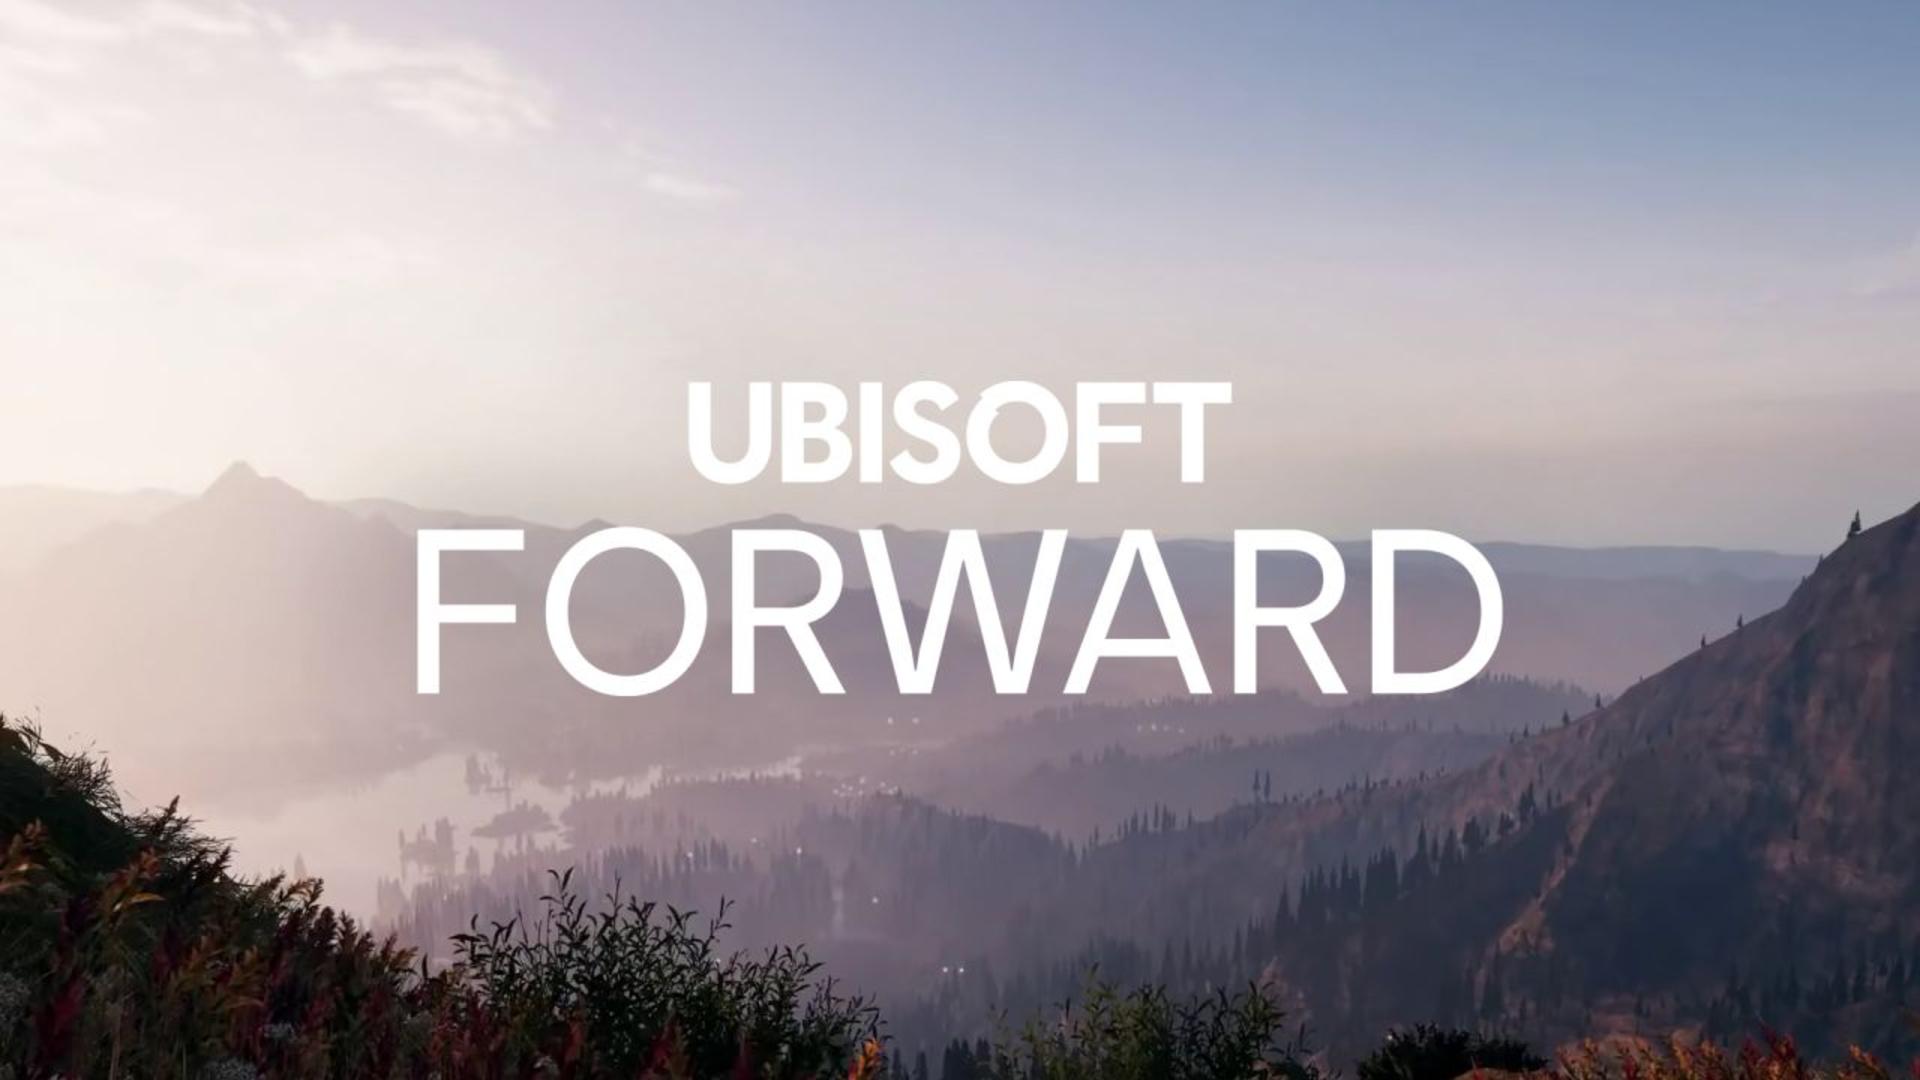 Ubisoft forward será o evento online em julho | f19f21a1 ubisoft forward | julho 2021 | ubisoft forward julho 2021